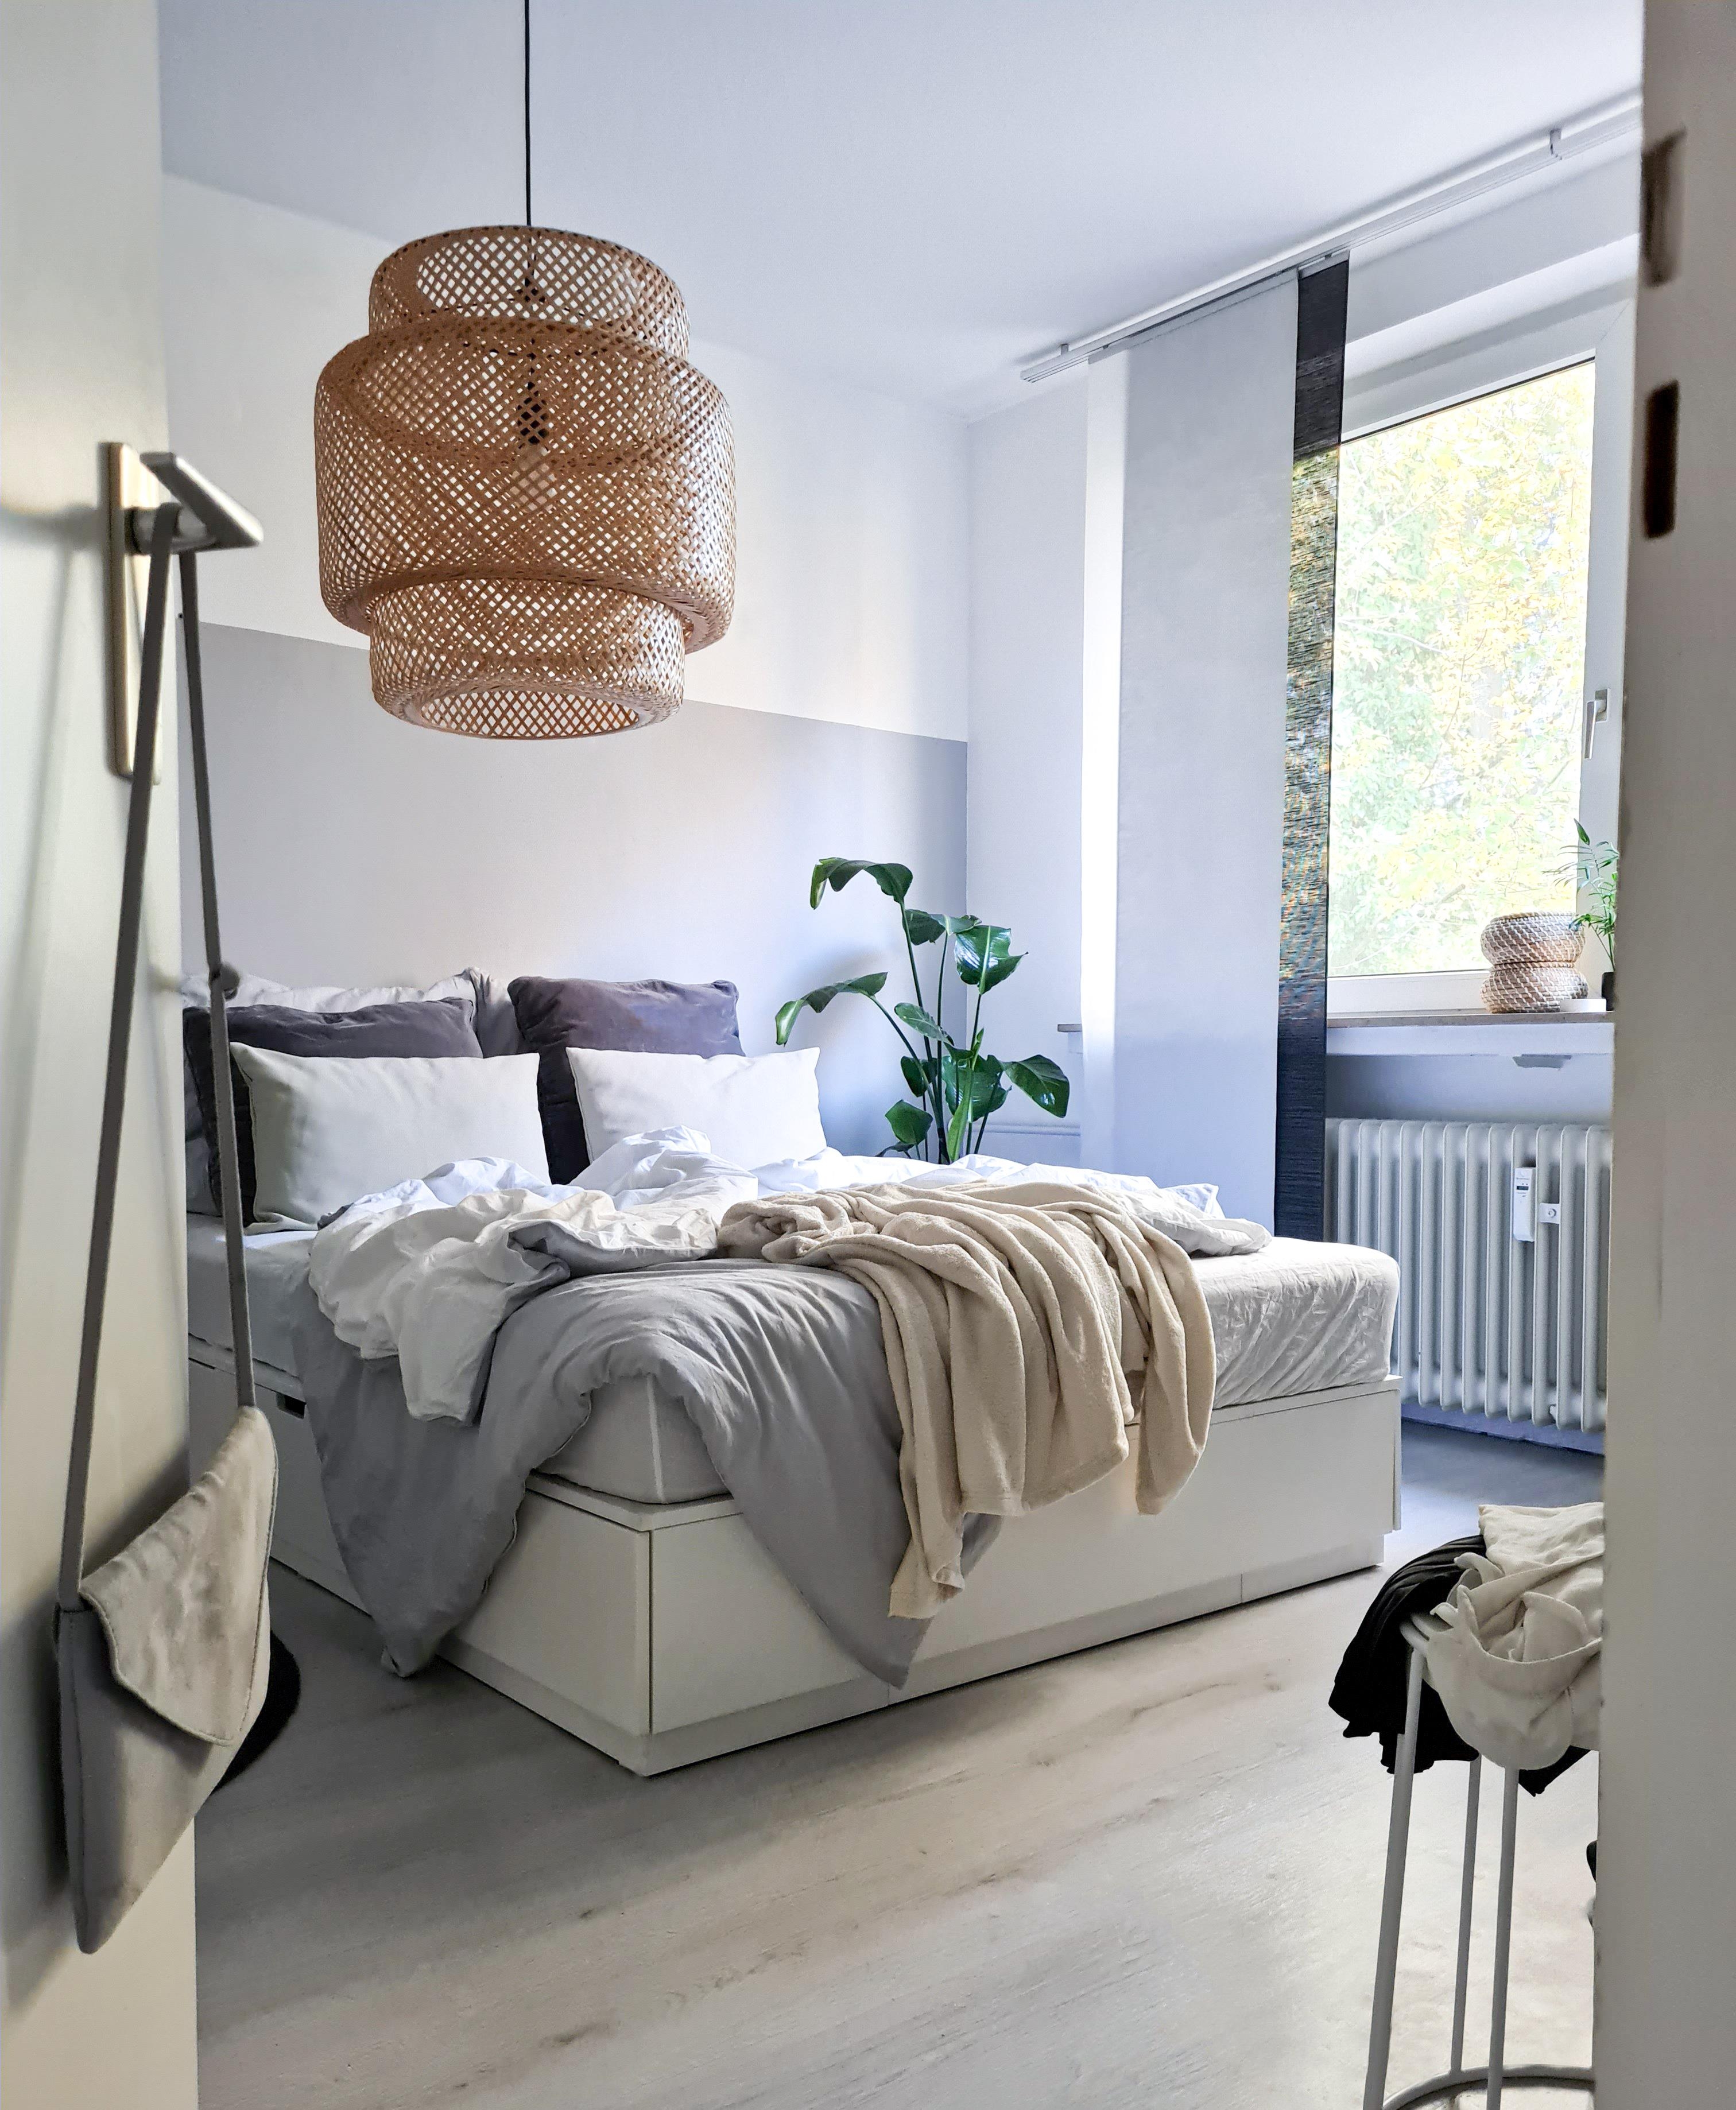 Möbel geschubst 🙃
#schlafzimner #neu #einrichten #bett #wohnideen #skandinavischwohnen #nordichome 